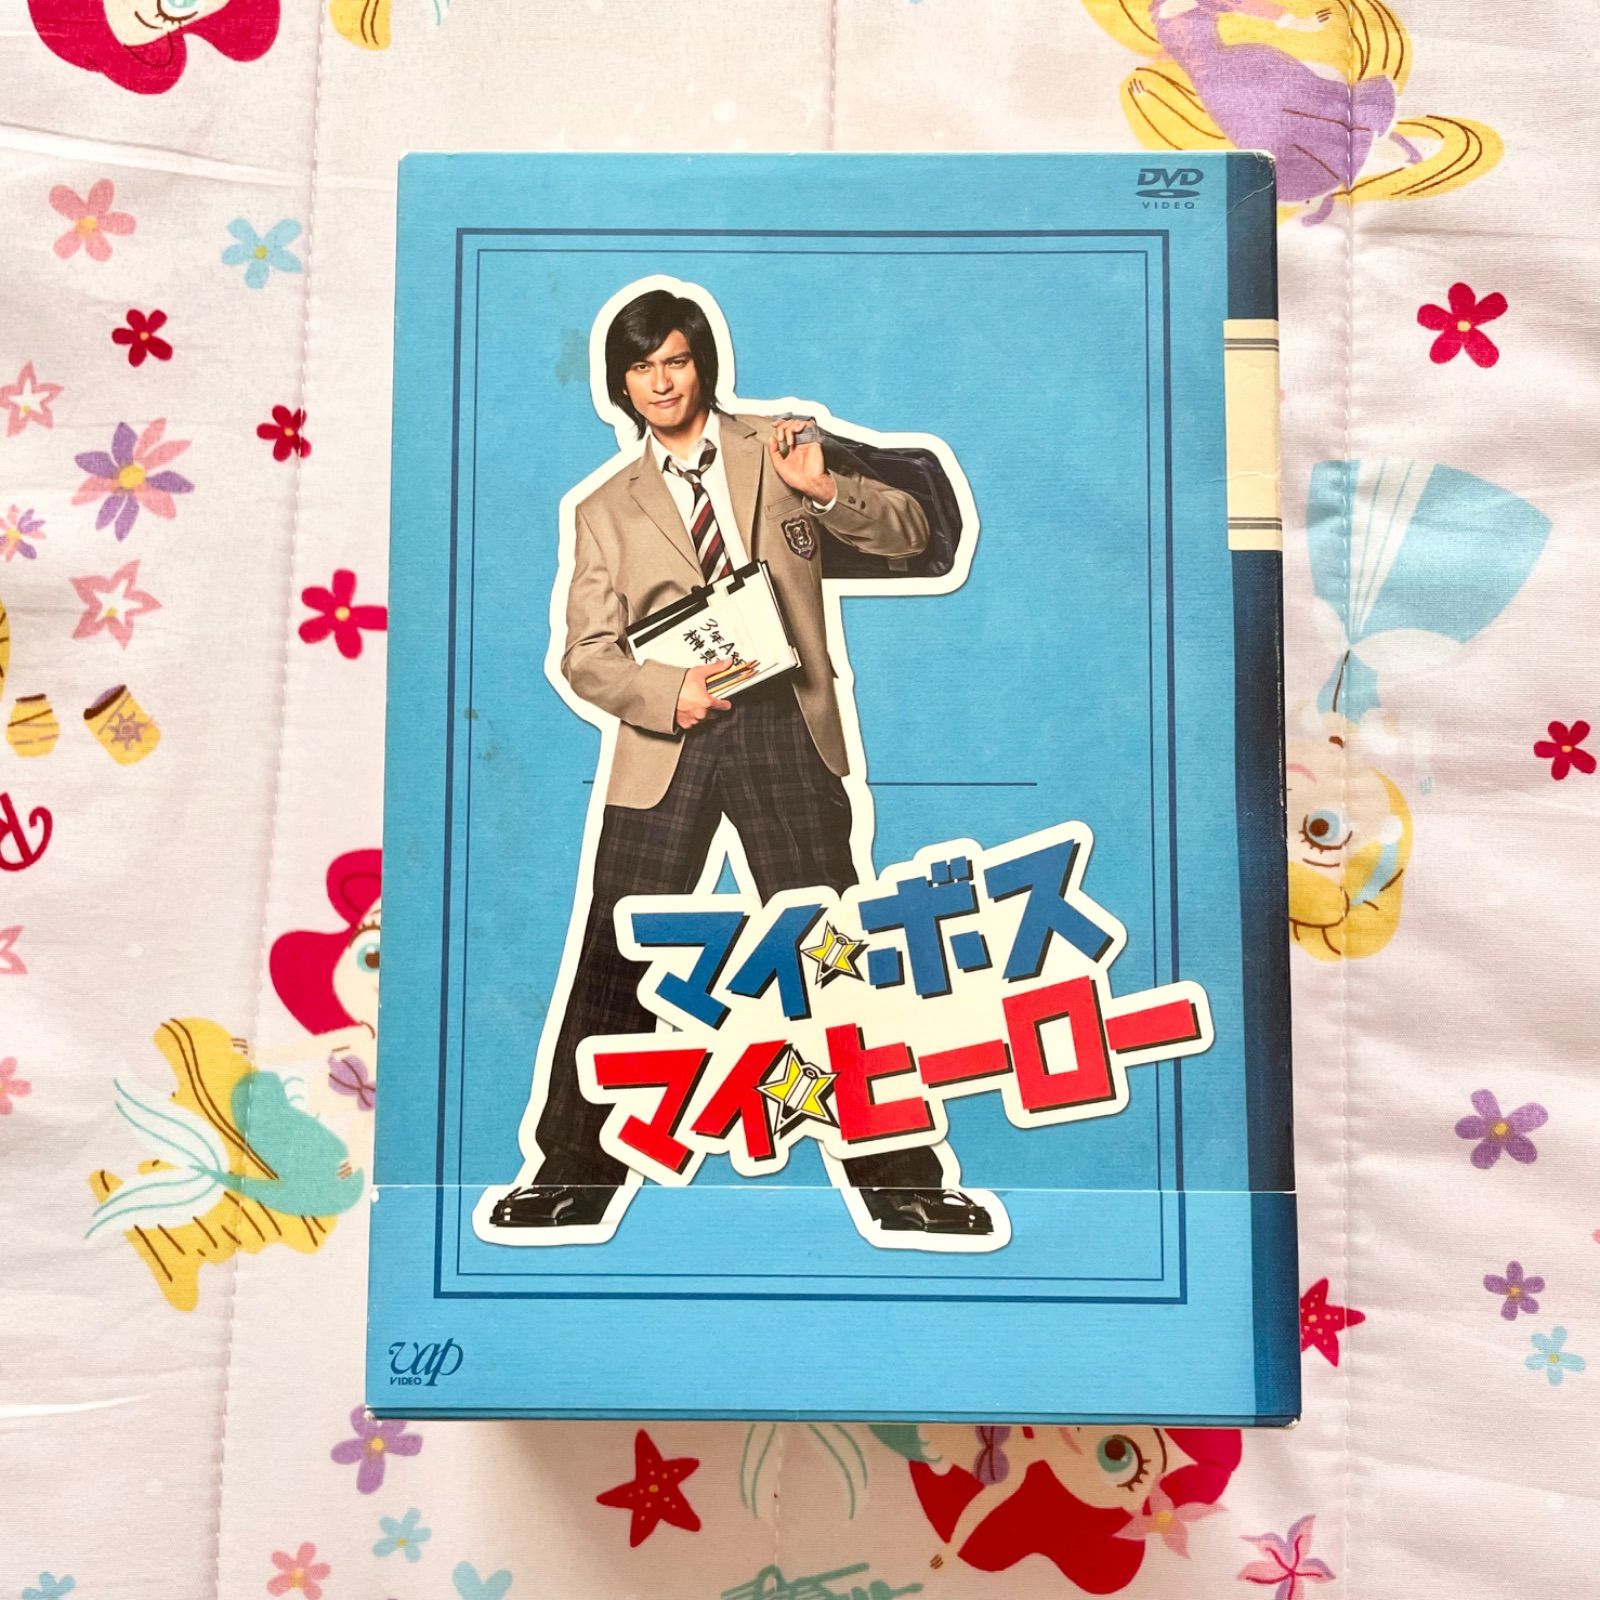 マイボスマイヒーロー DVD DVDBOX 長瀬智也 - メルカリ